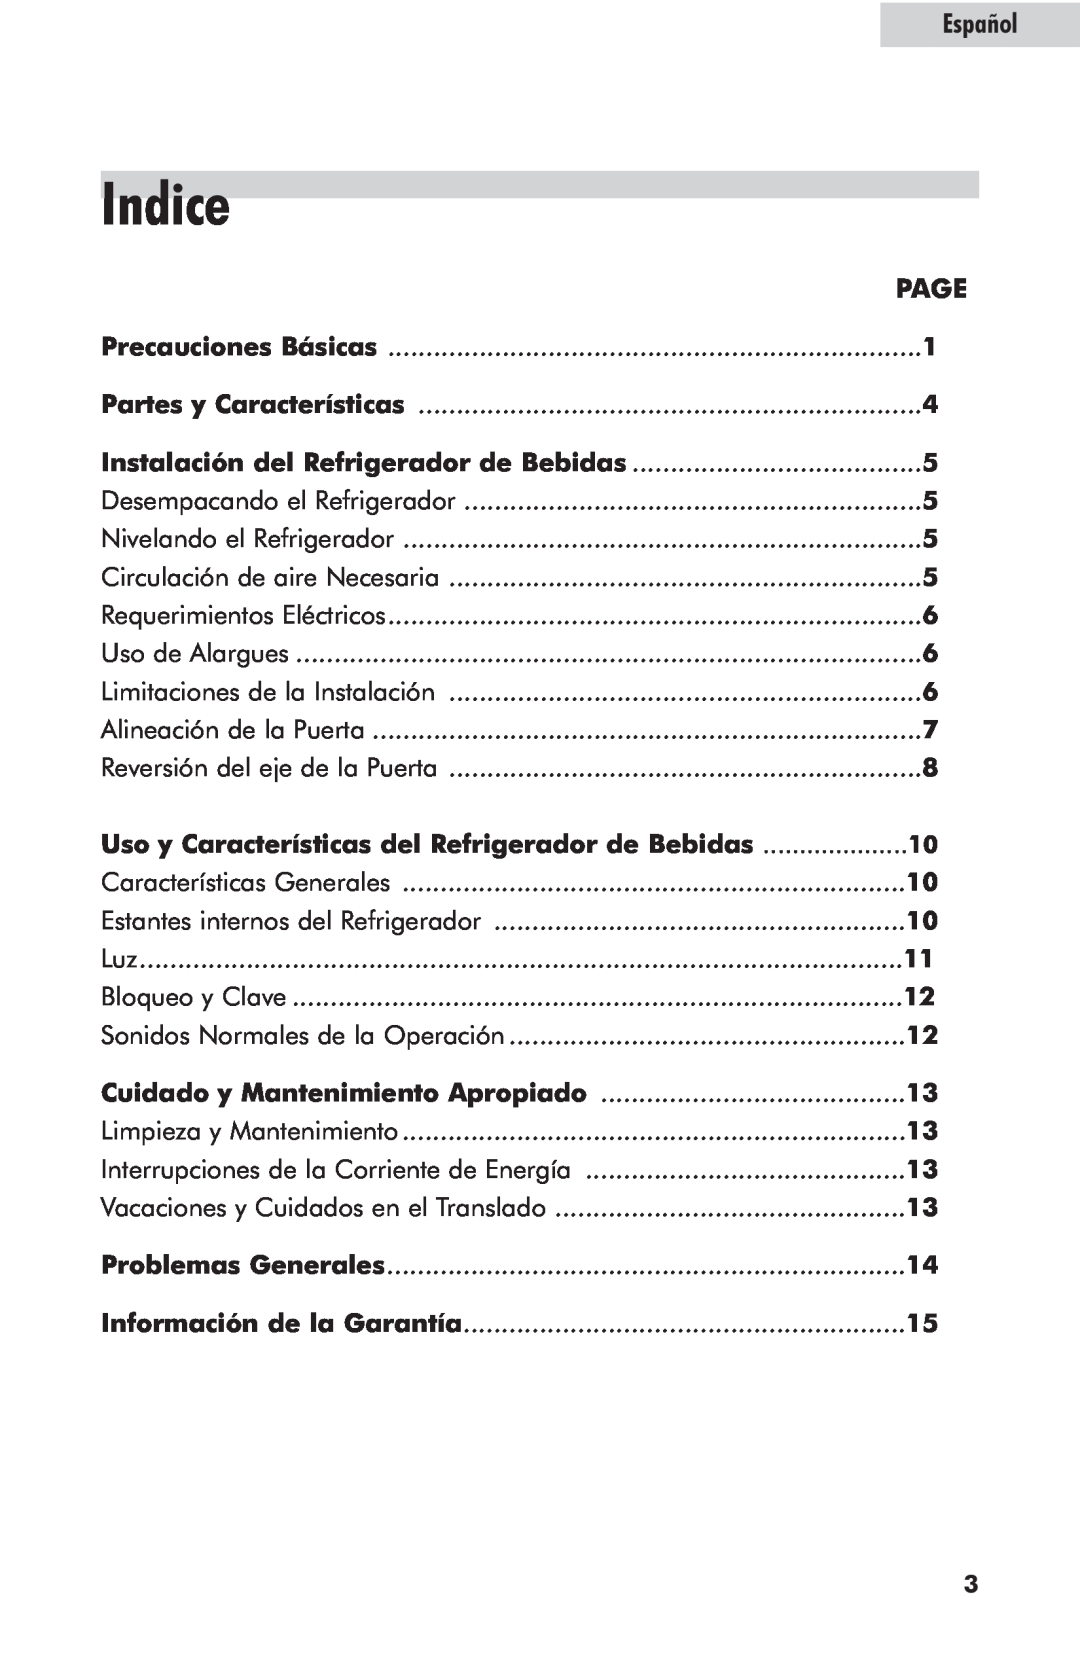 Haier hc125fvs user manual Indice, Uso y Características del Refrigerador de Bebidas, Español 